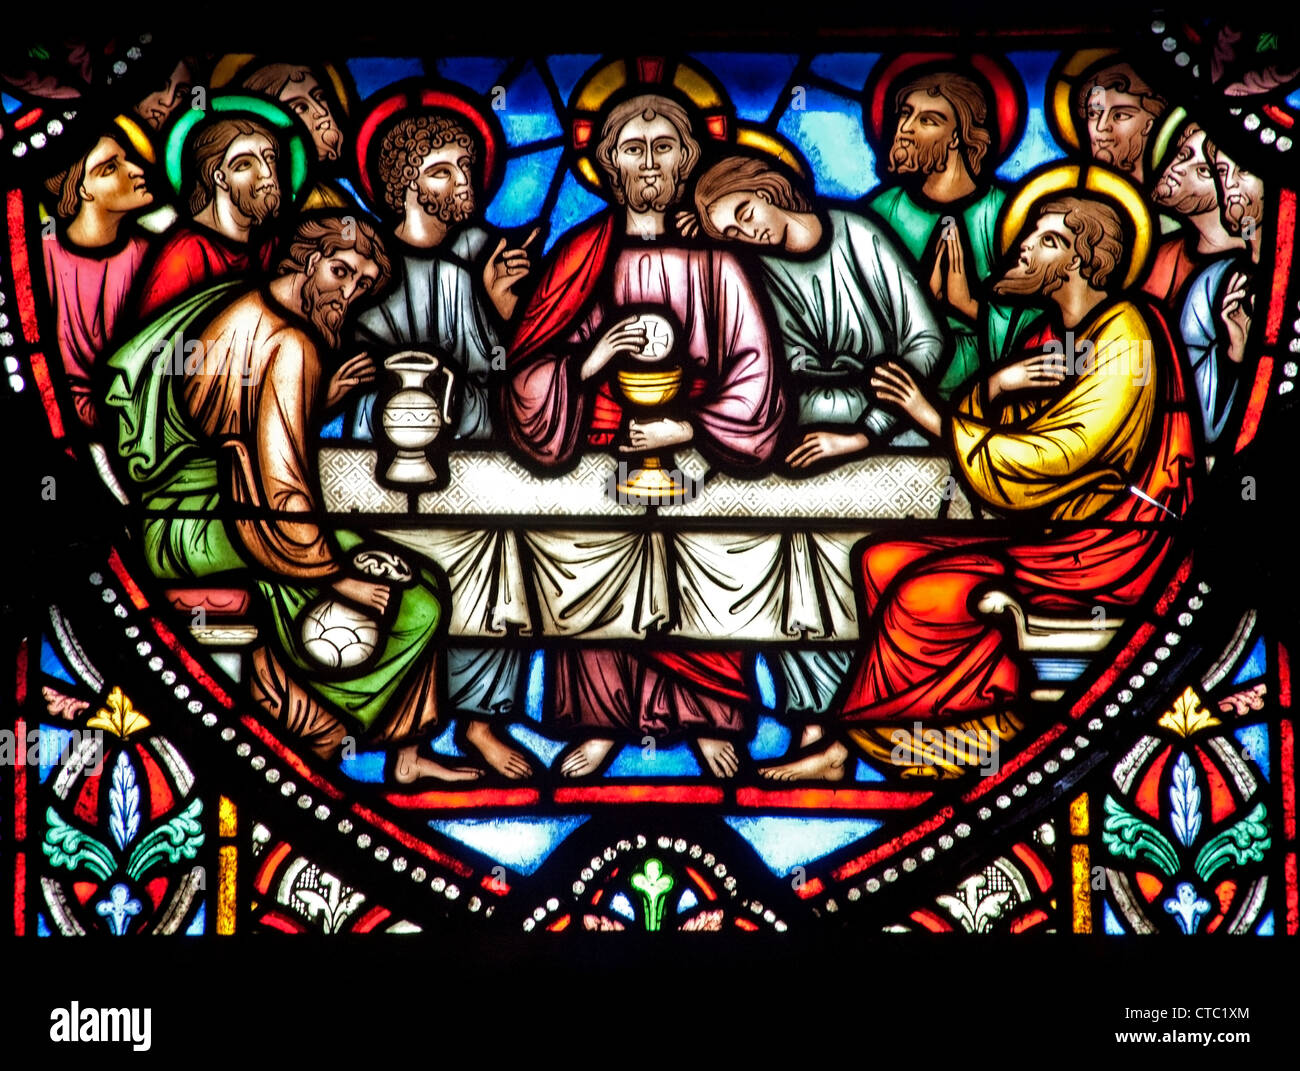 Bruxelles - 22 giugno: Dettaglio dello scorso super di Cristo dal vetro di finestra in st. Michael s cattedrale gotica Foto Stock